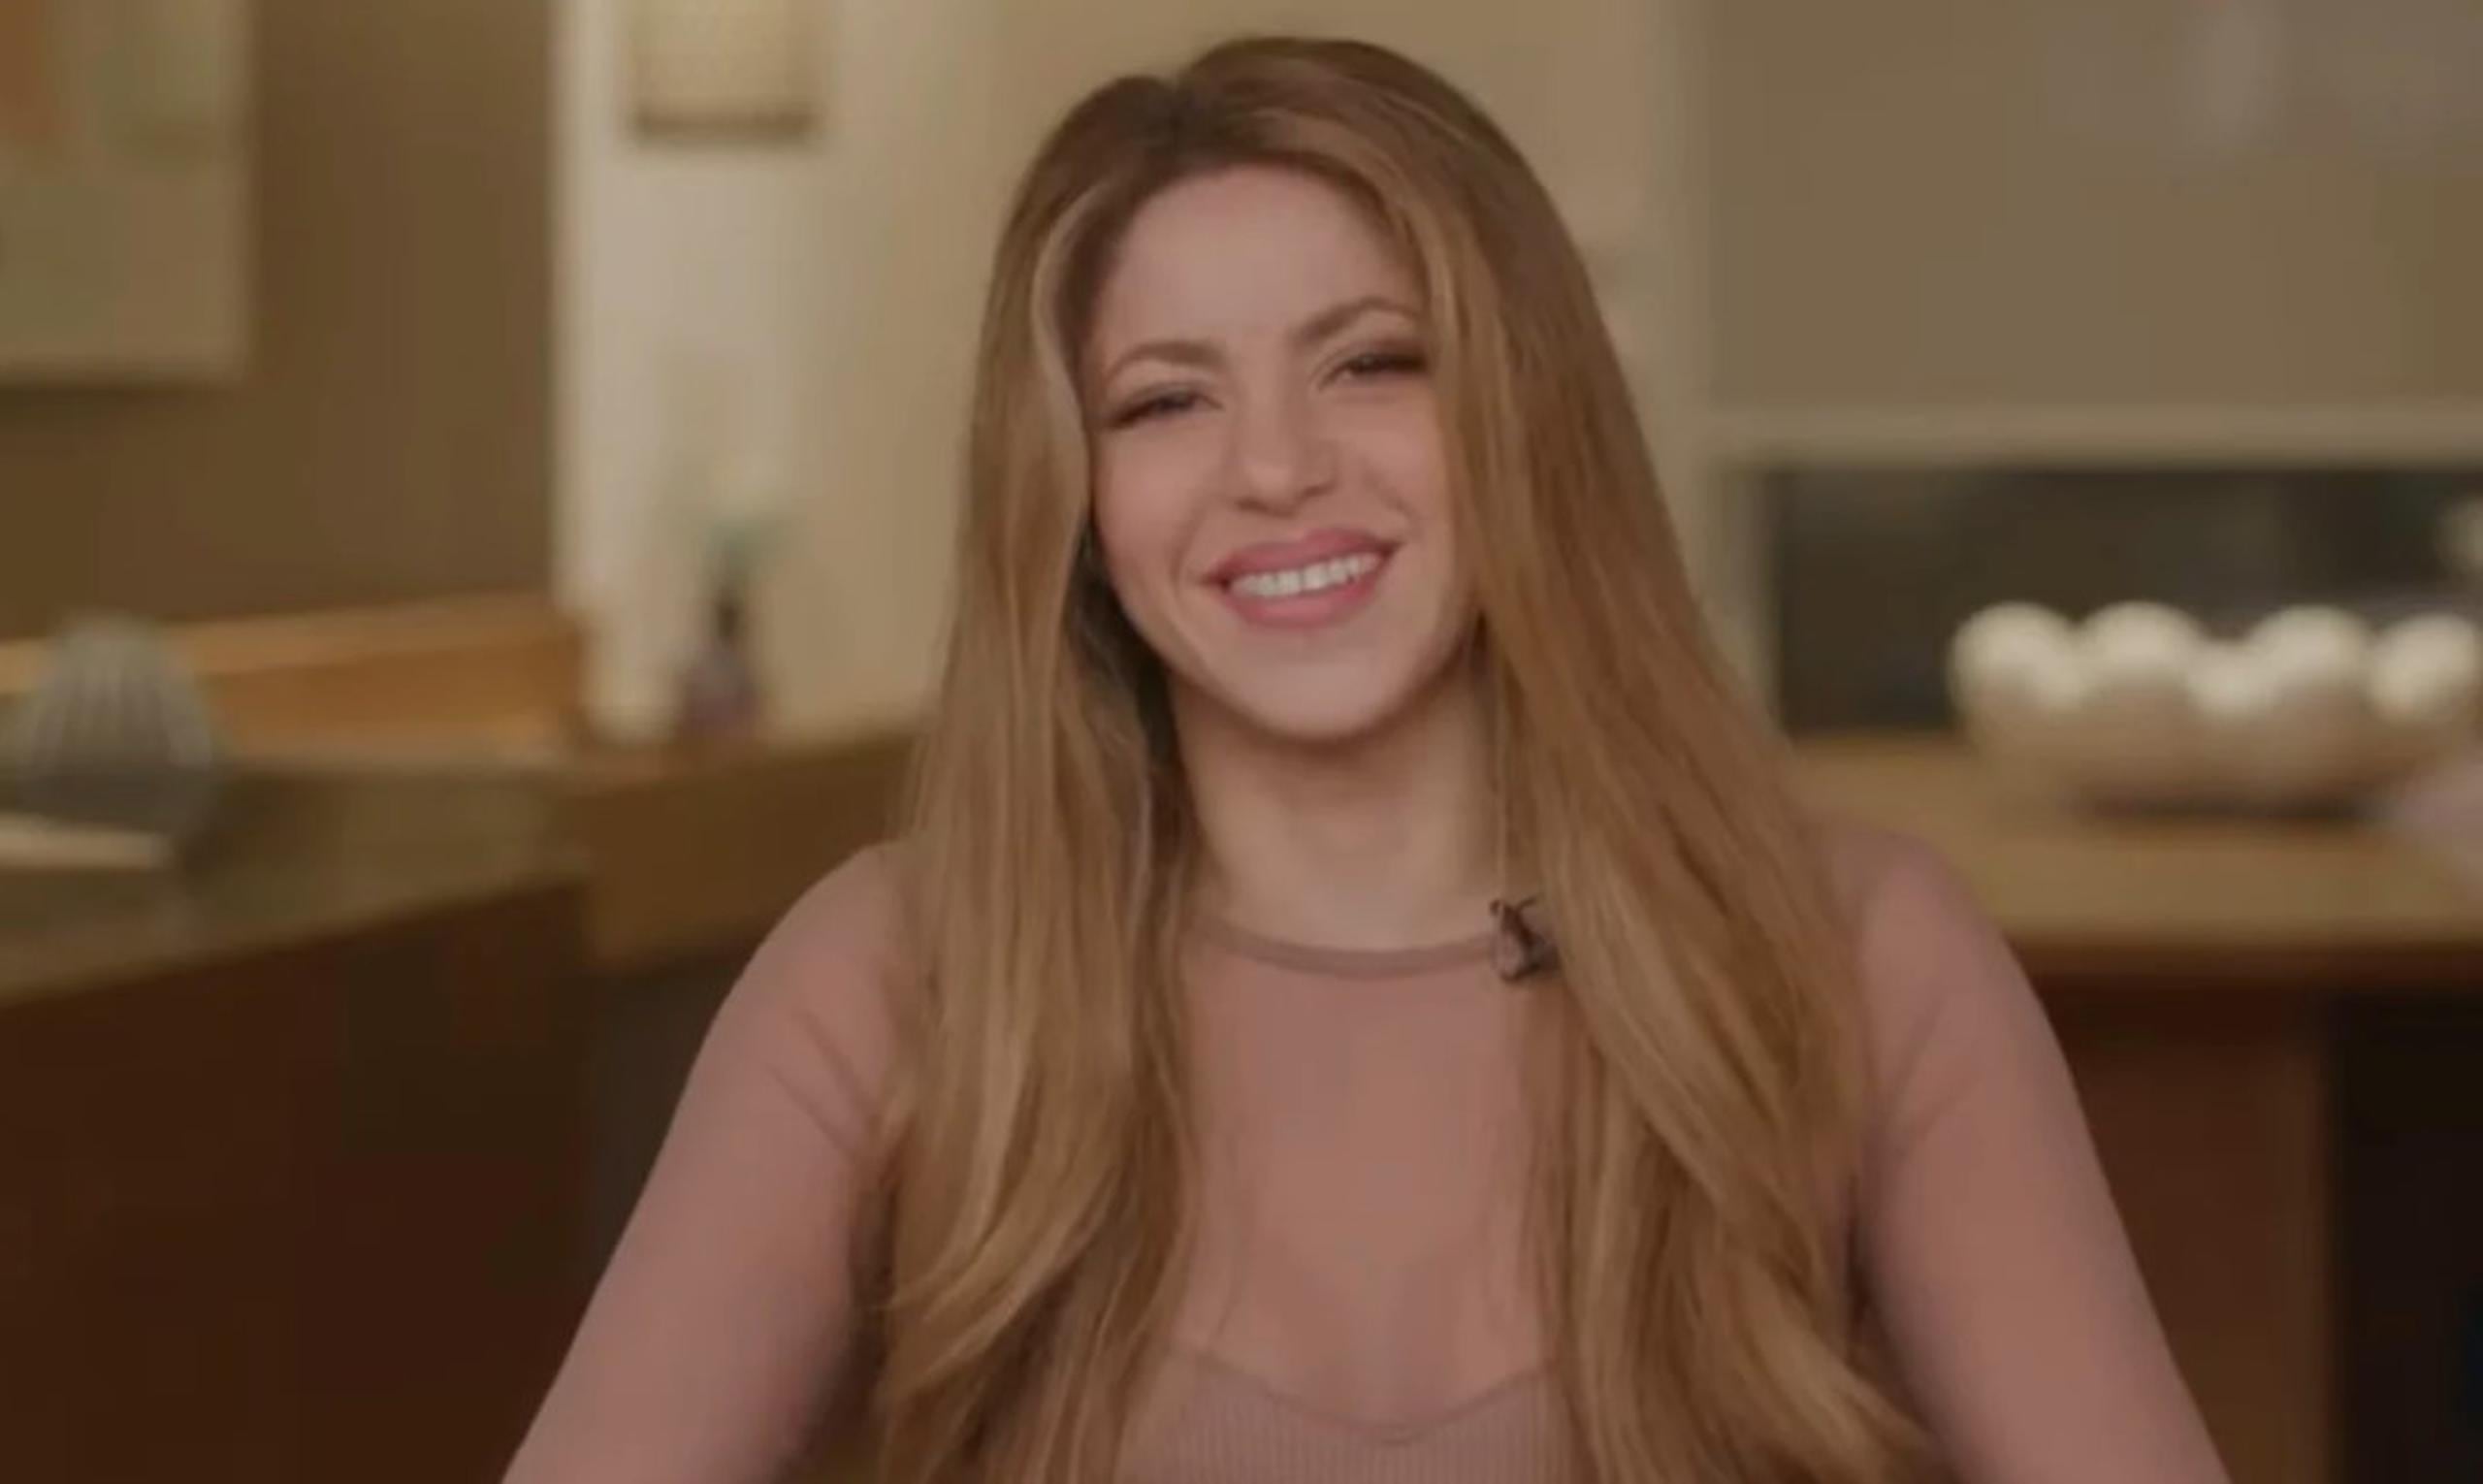 Este representante artístico tenía 31 años cuando dejó pasar la oportunidad de promover la carrera de una adolescente Shakira en España. “Son cosas que pasan, una anécdota en el camino”, asegura.